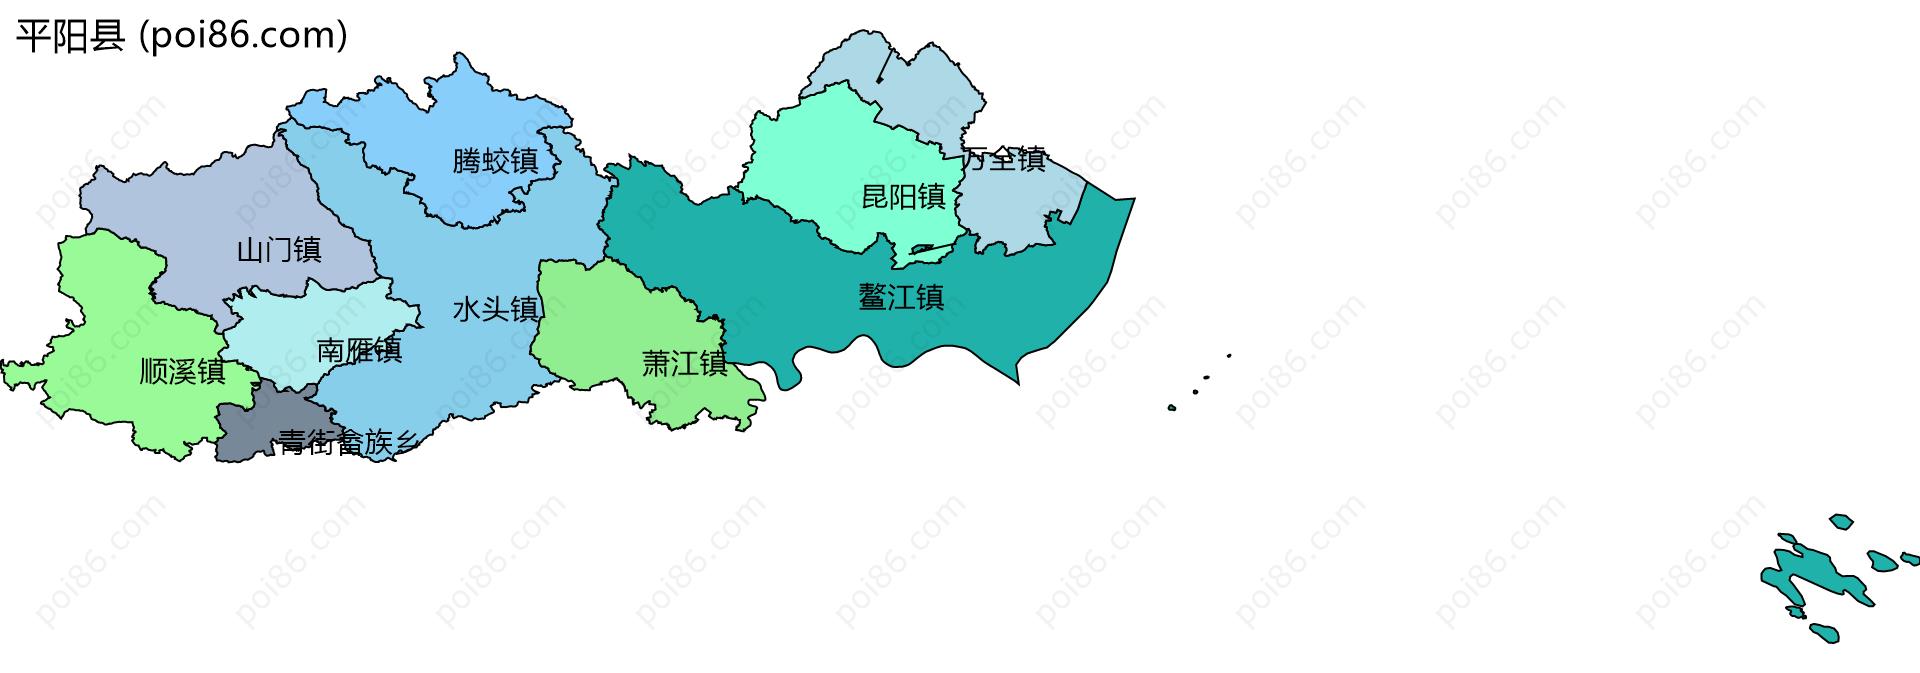 平阳县边界地图